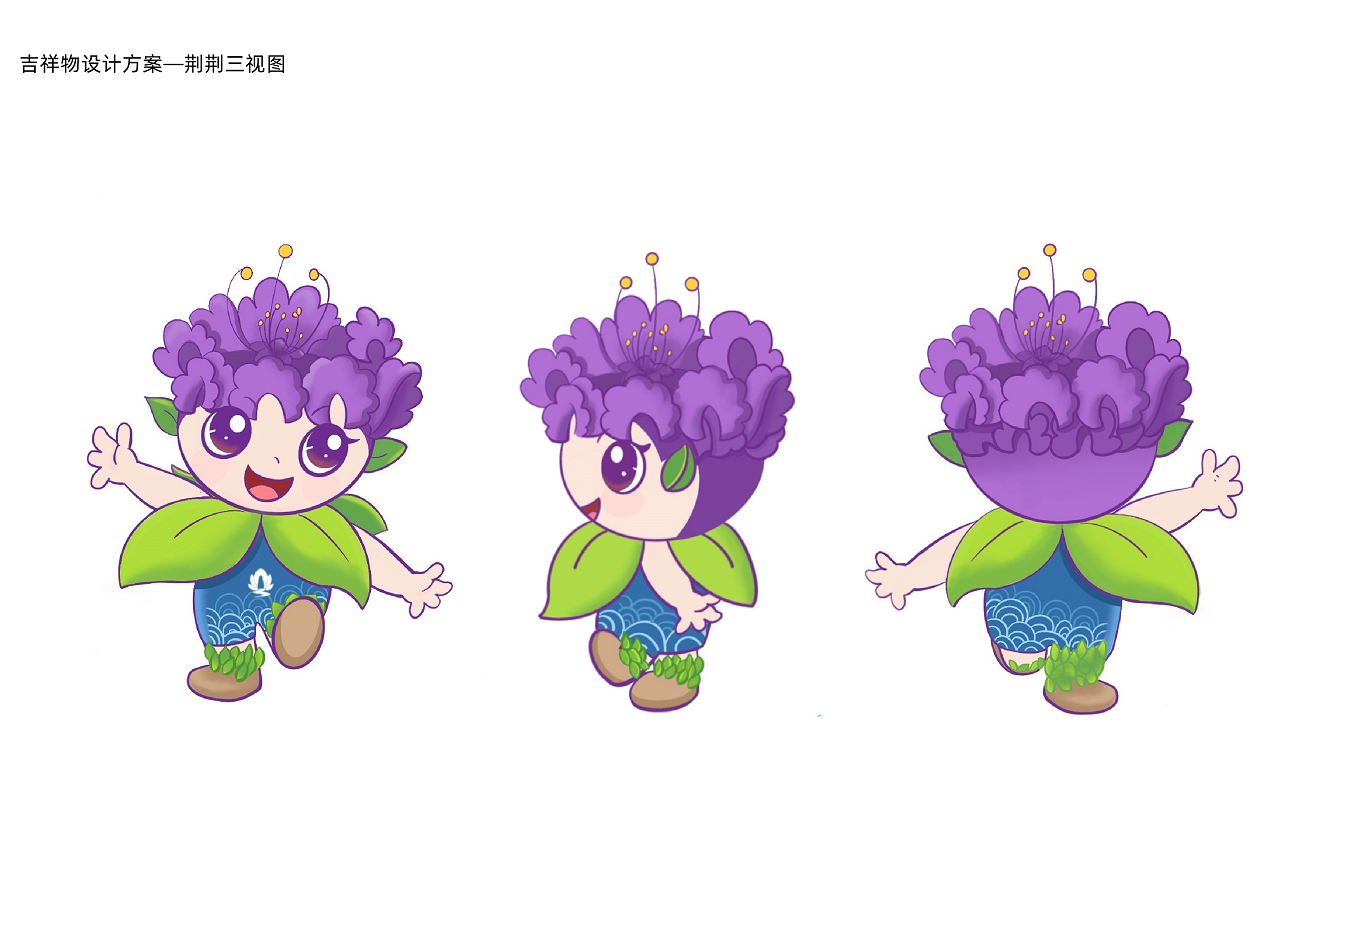 吉祥物"荆荆"薇薇"原型为荆门市花紫薇花,其头饰分别用紫薇花和赤薇